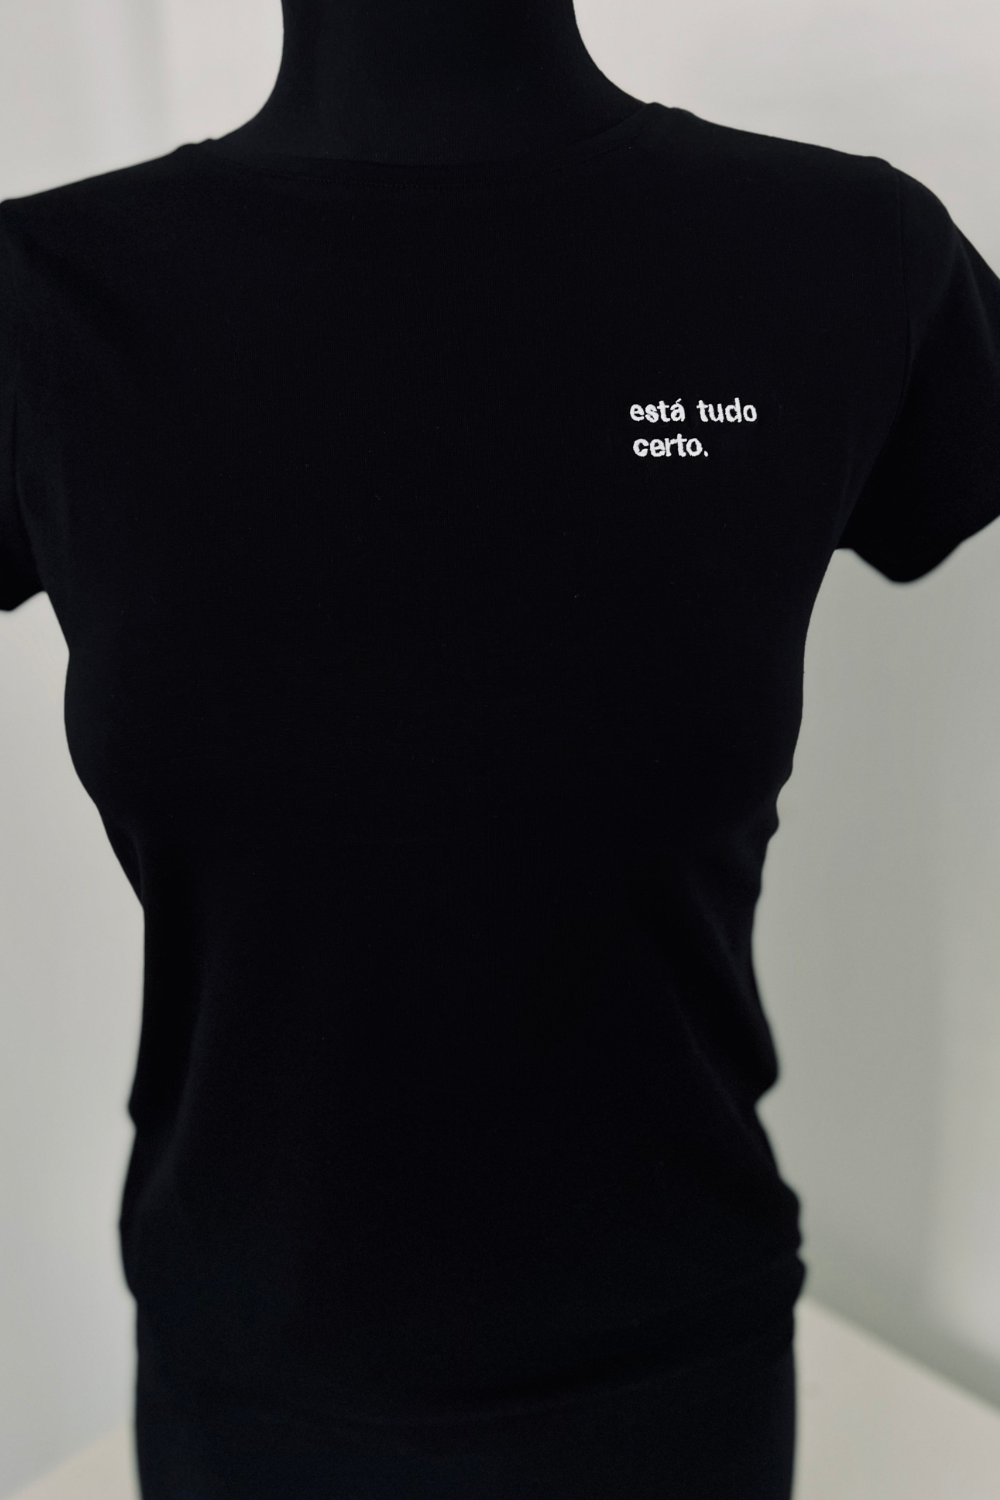 T-shirt - Está tudo certo